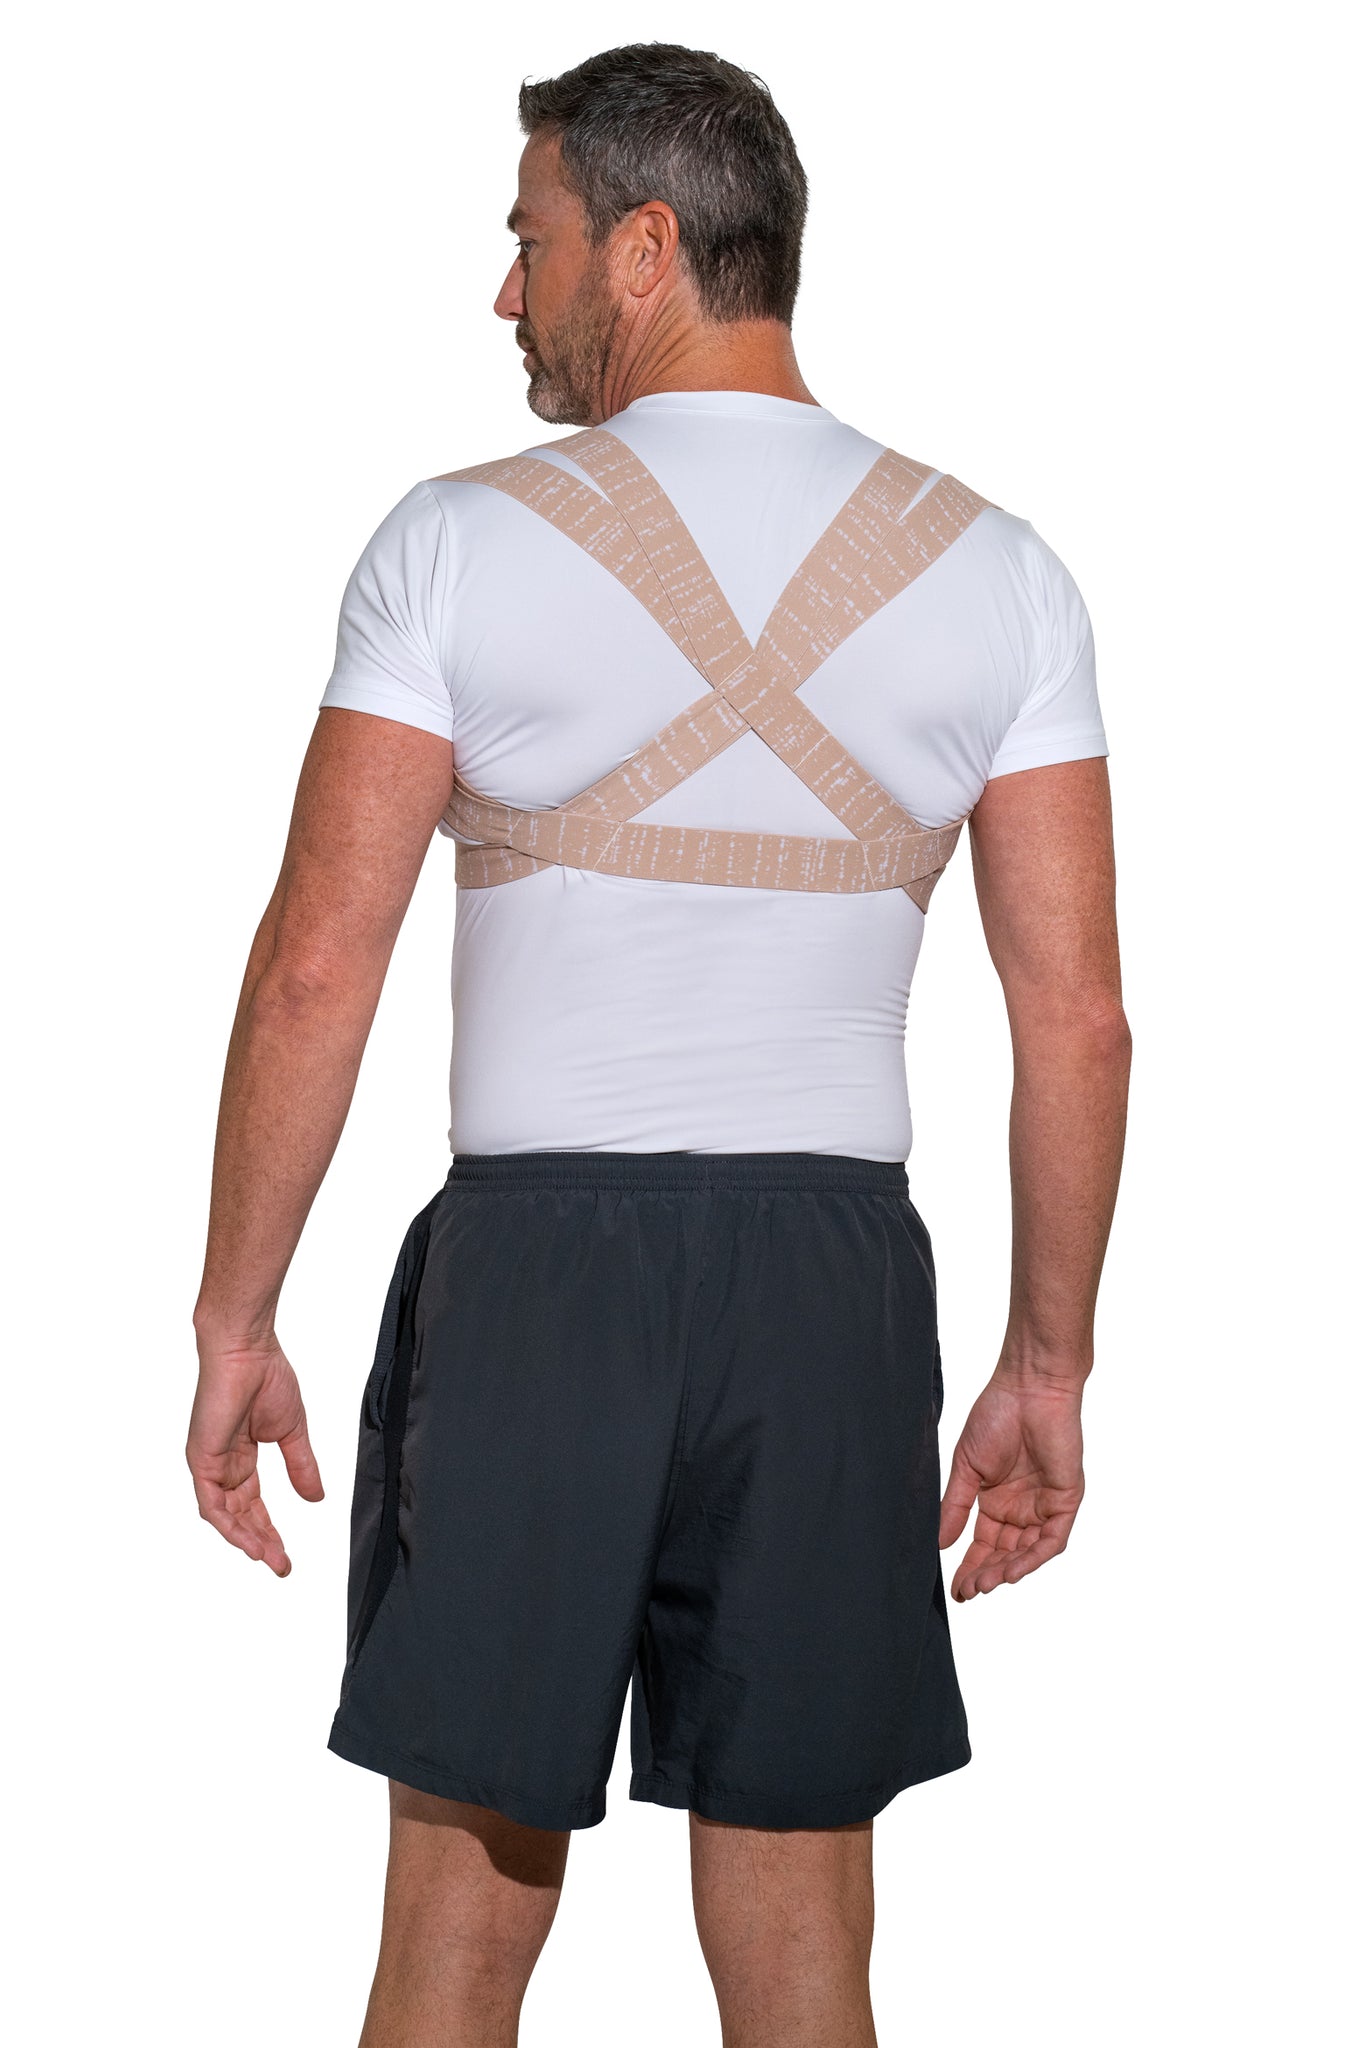 Back Posture Corrector for Men